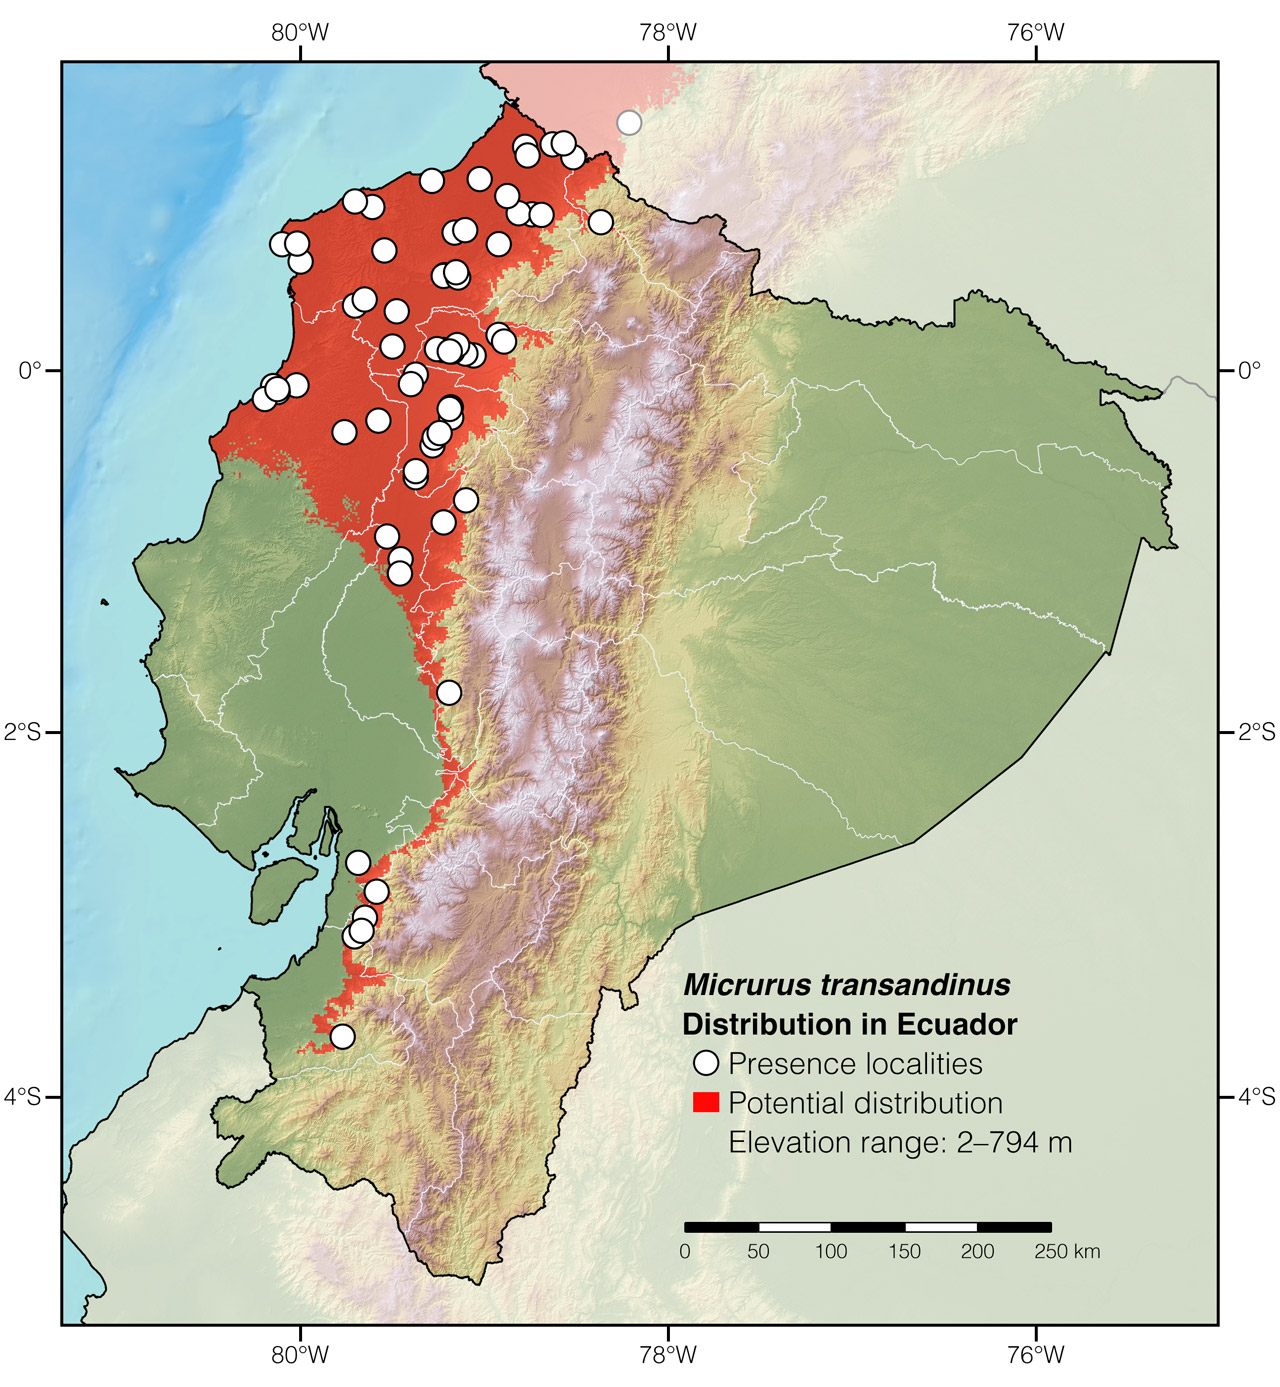 Distribution of Micrurus transandinus in Ecuador